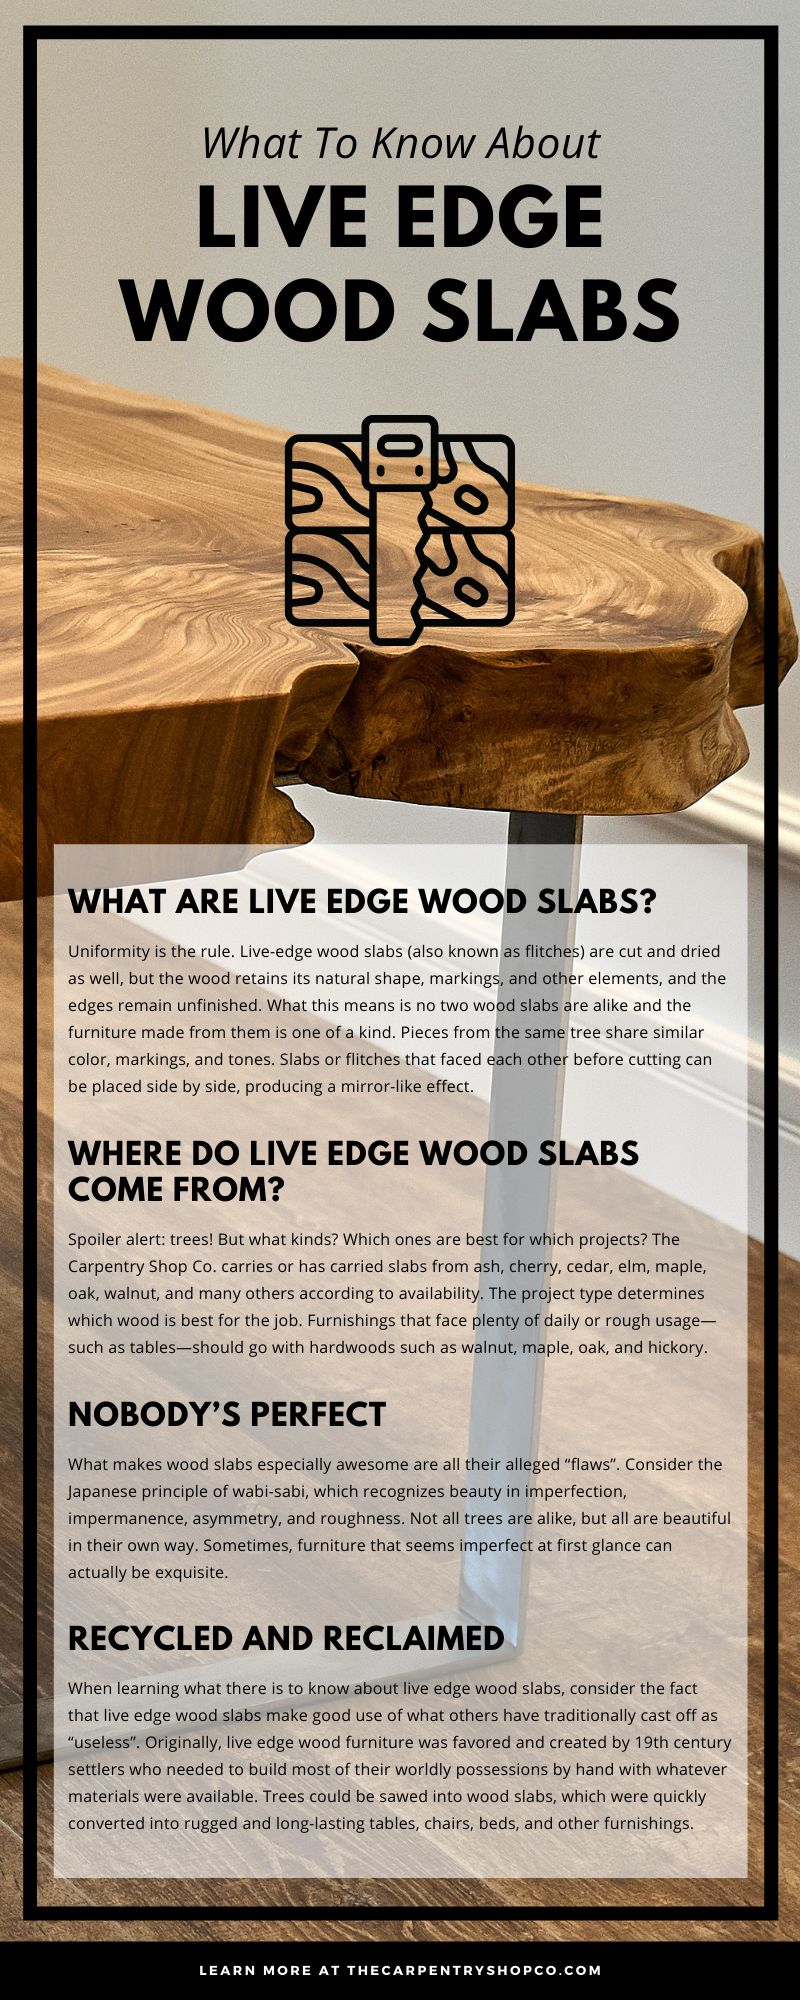 Lo que debe saber sobre las losas de madera Live Edge